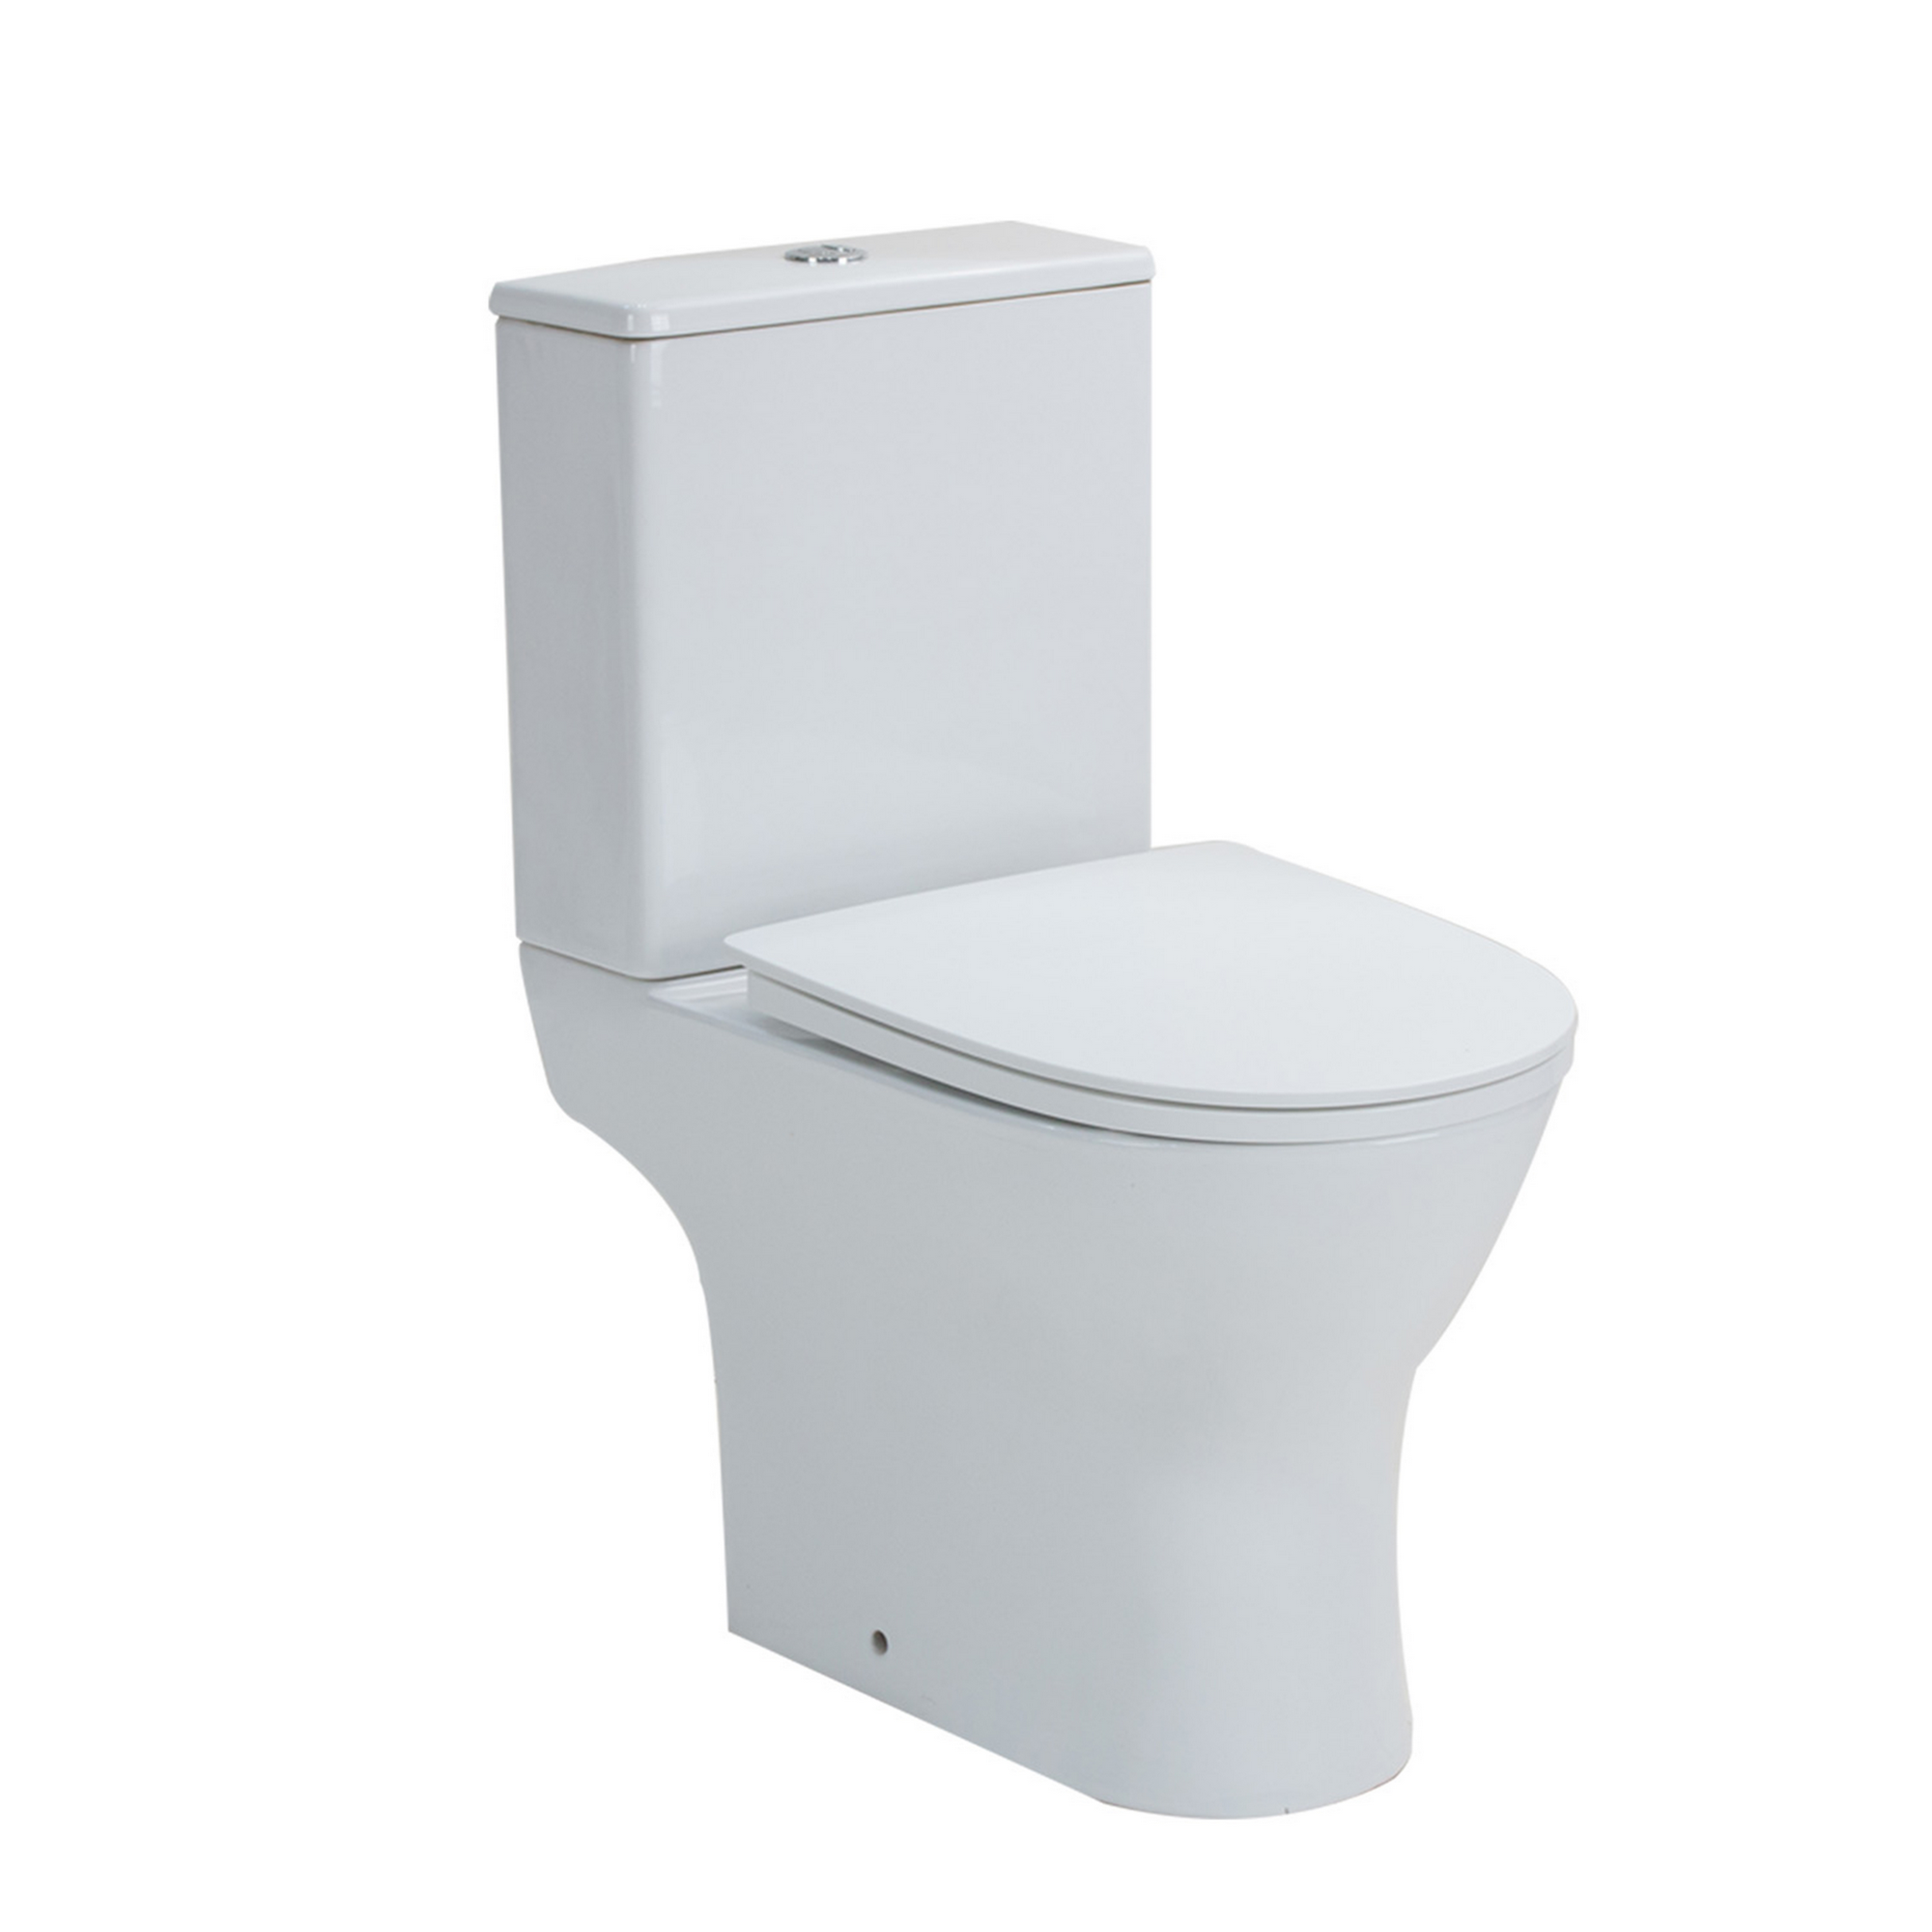 Stand-WC 'Paros' mit WC-Sitz und Spülkasten, spülrandlos, weiß + product picture